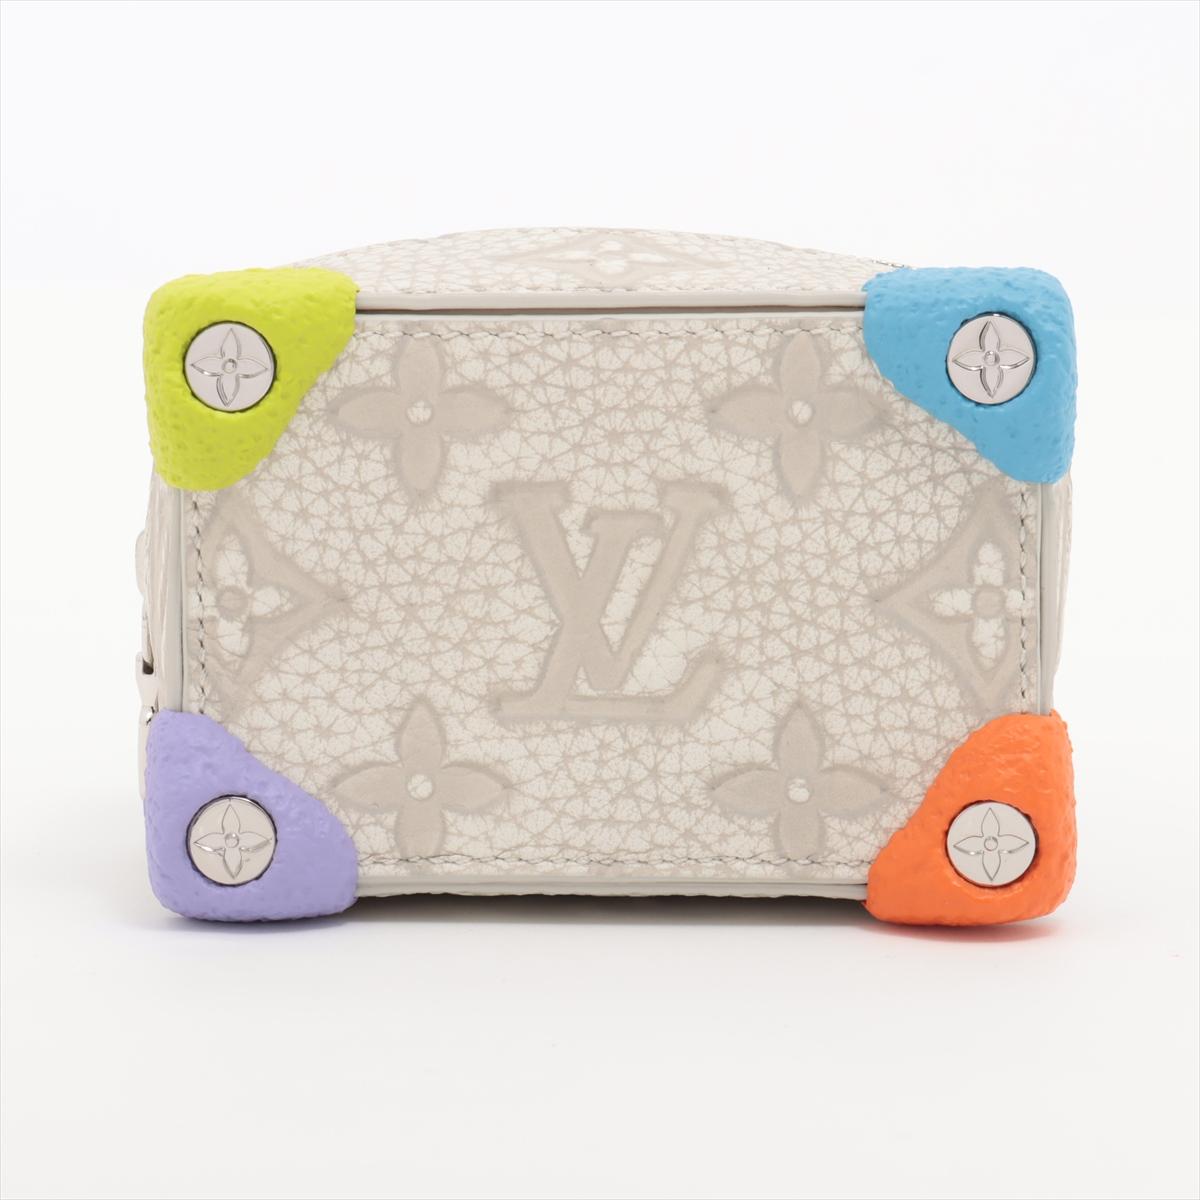 Der Louis Vuitton Taurillon Monogram Climbing Pouch Bag Charm in Off-White ist ein fesselndes und vielseitiges Accessoire, das jeder Louis Vuitton Tasche einen verspielten Touch verleiht. Die aus geschmeidigem Taurillon-Leder gefertigte Tasche ist